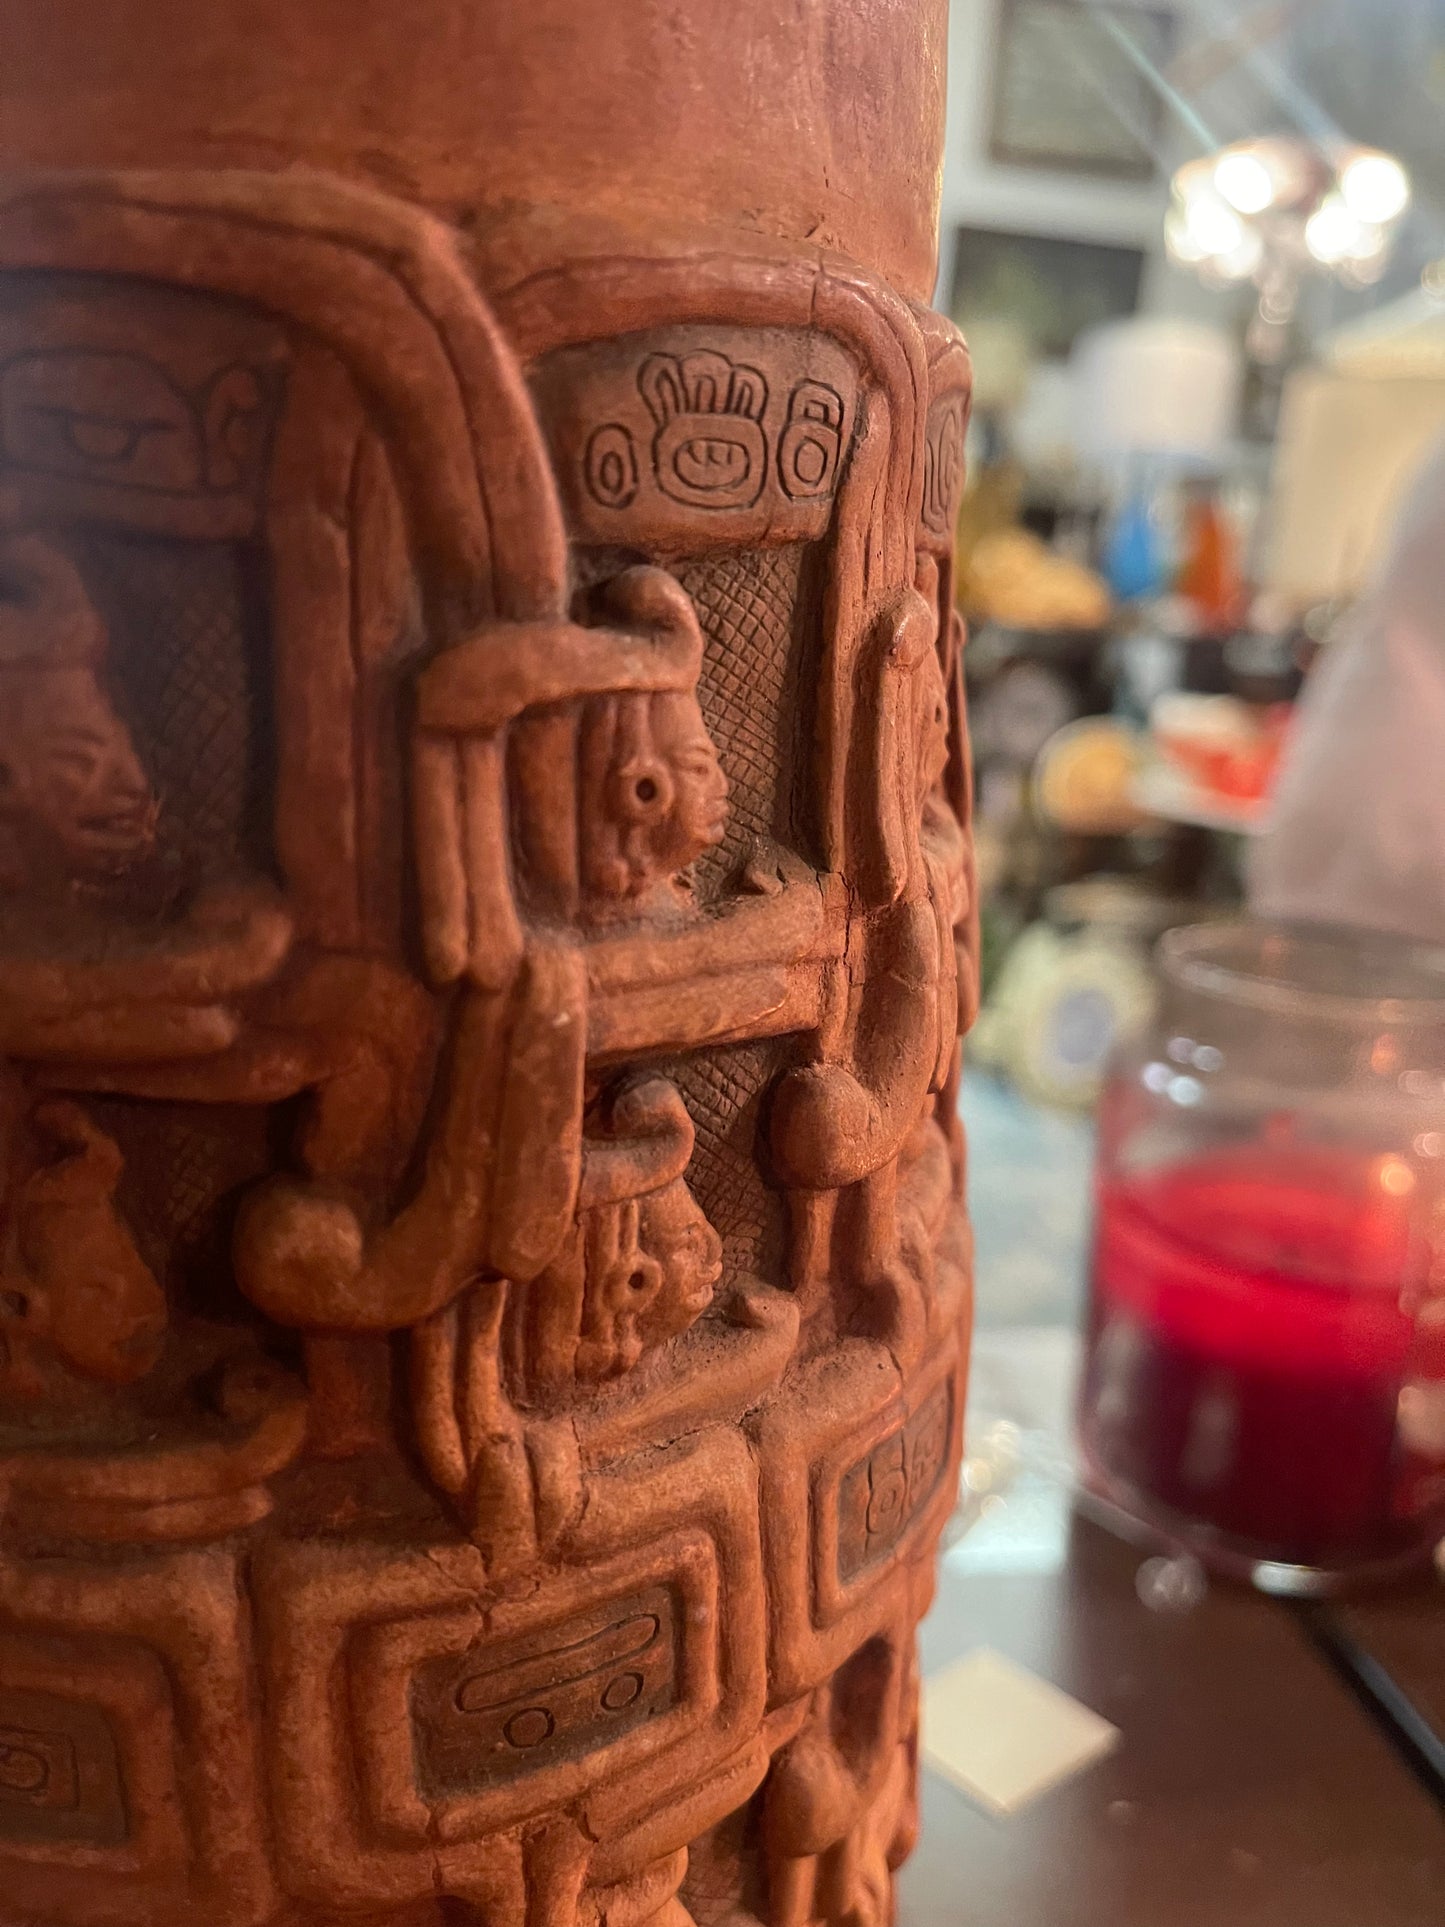 Alva Studios Mayan Vase Repro Smithsonian Institute 1954 14" MCM